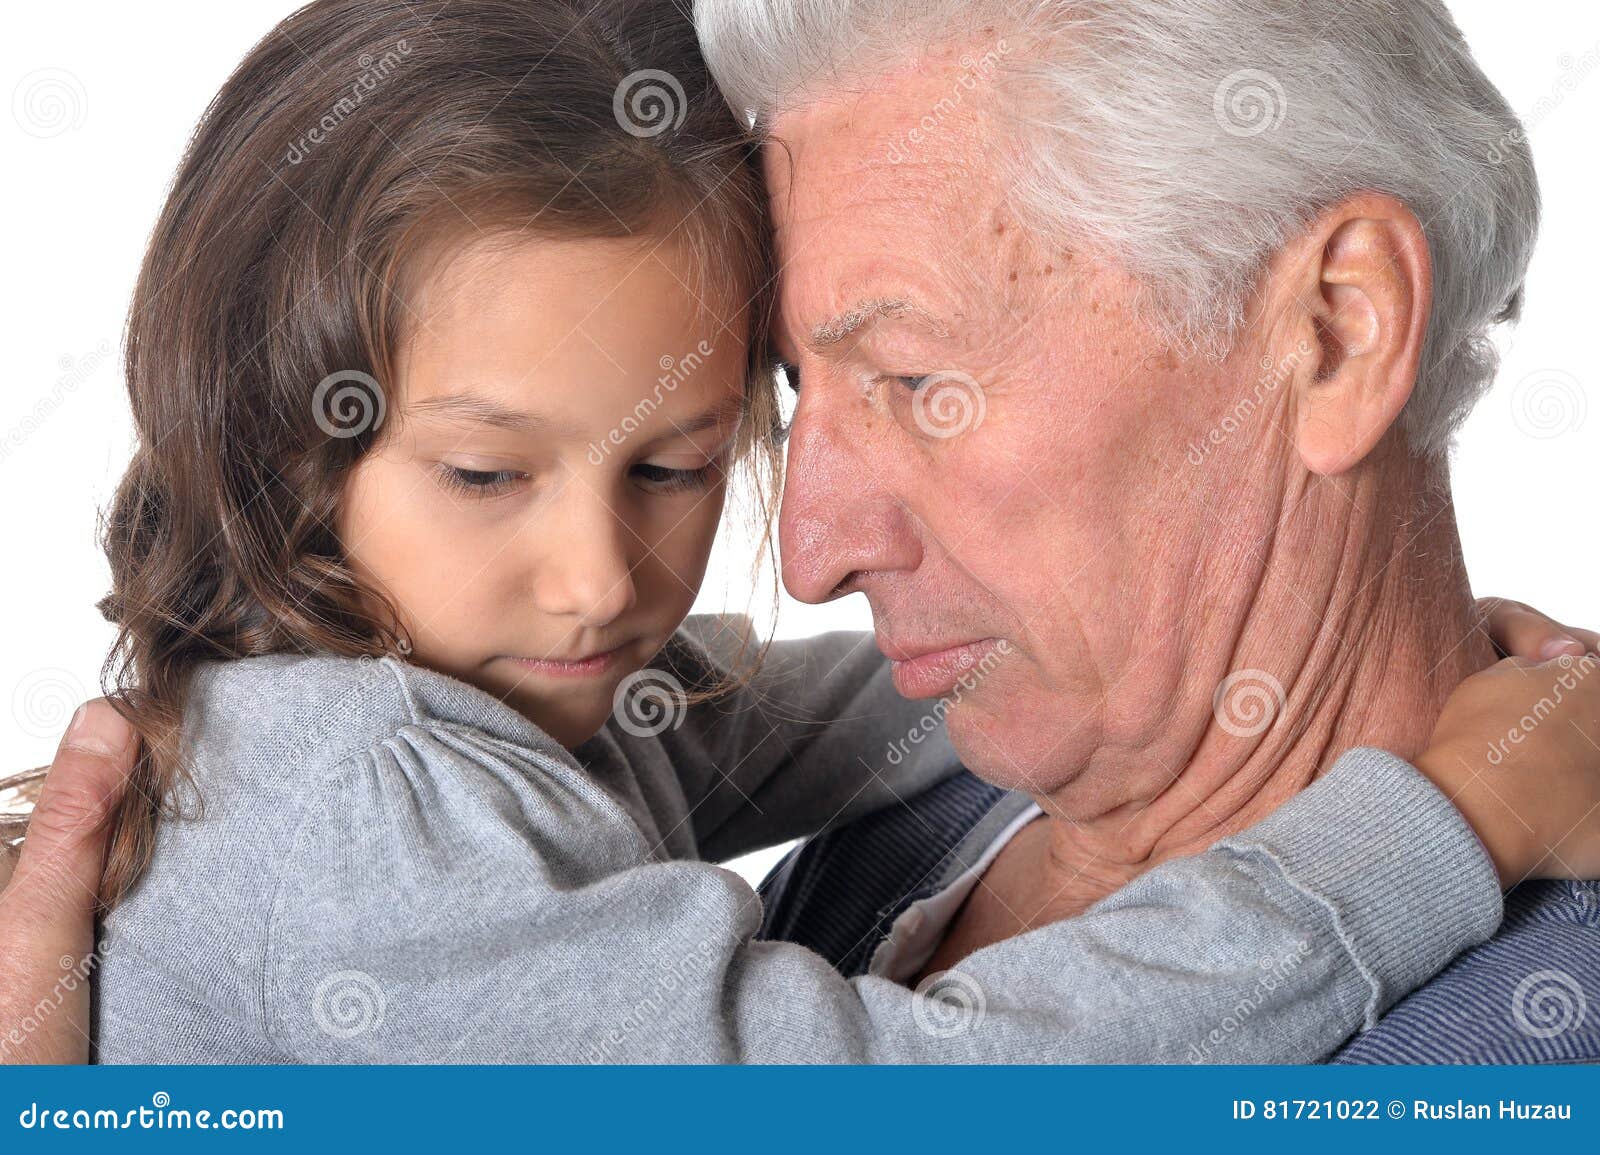 старик и малолетка минет фото 5